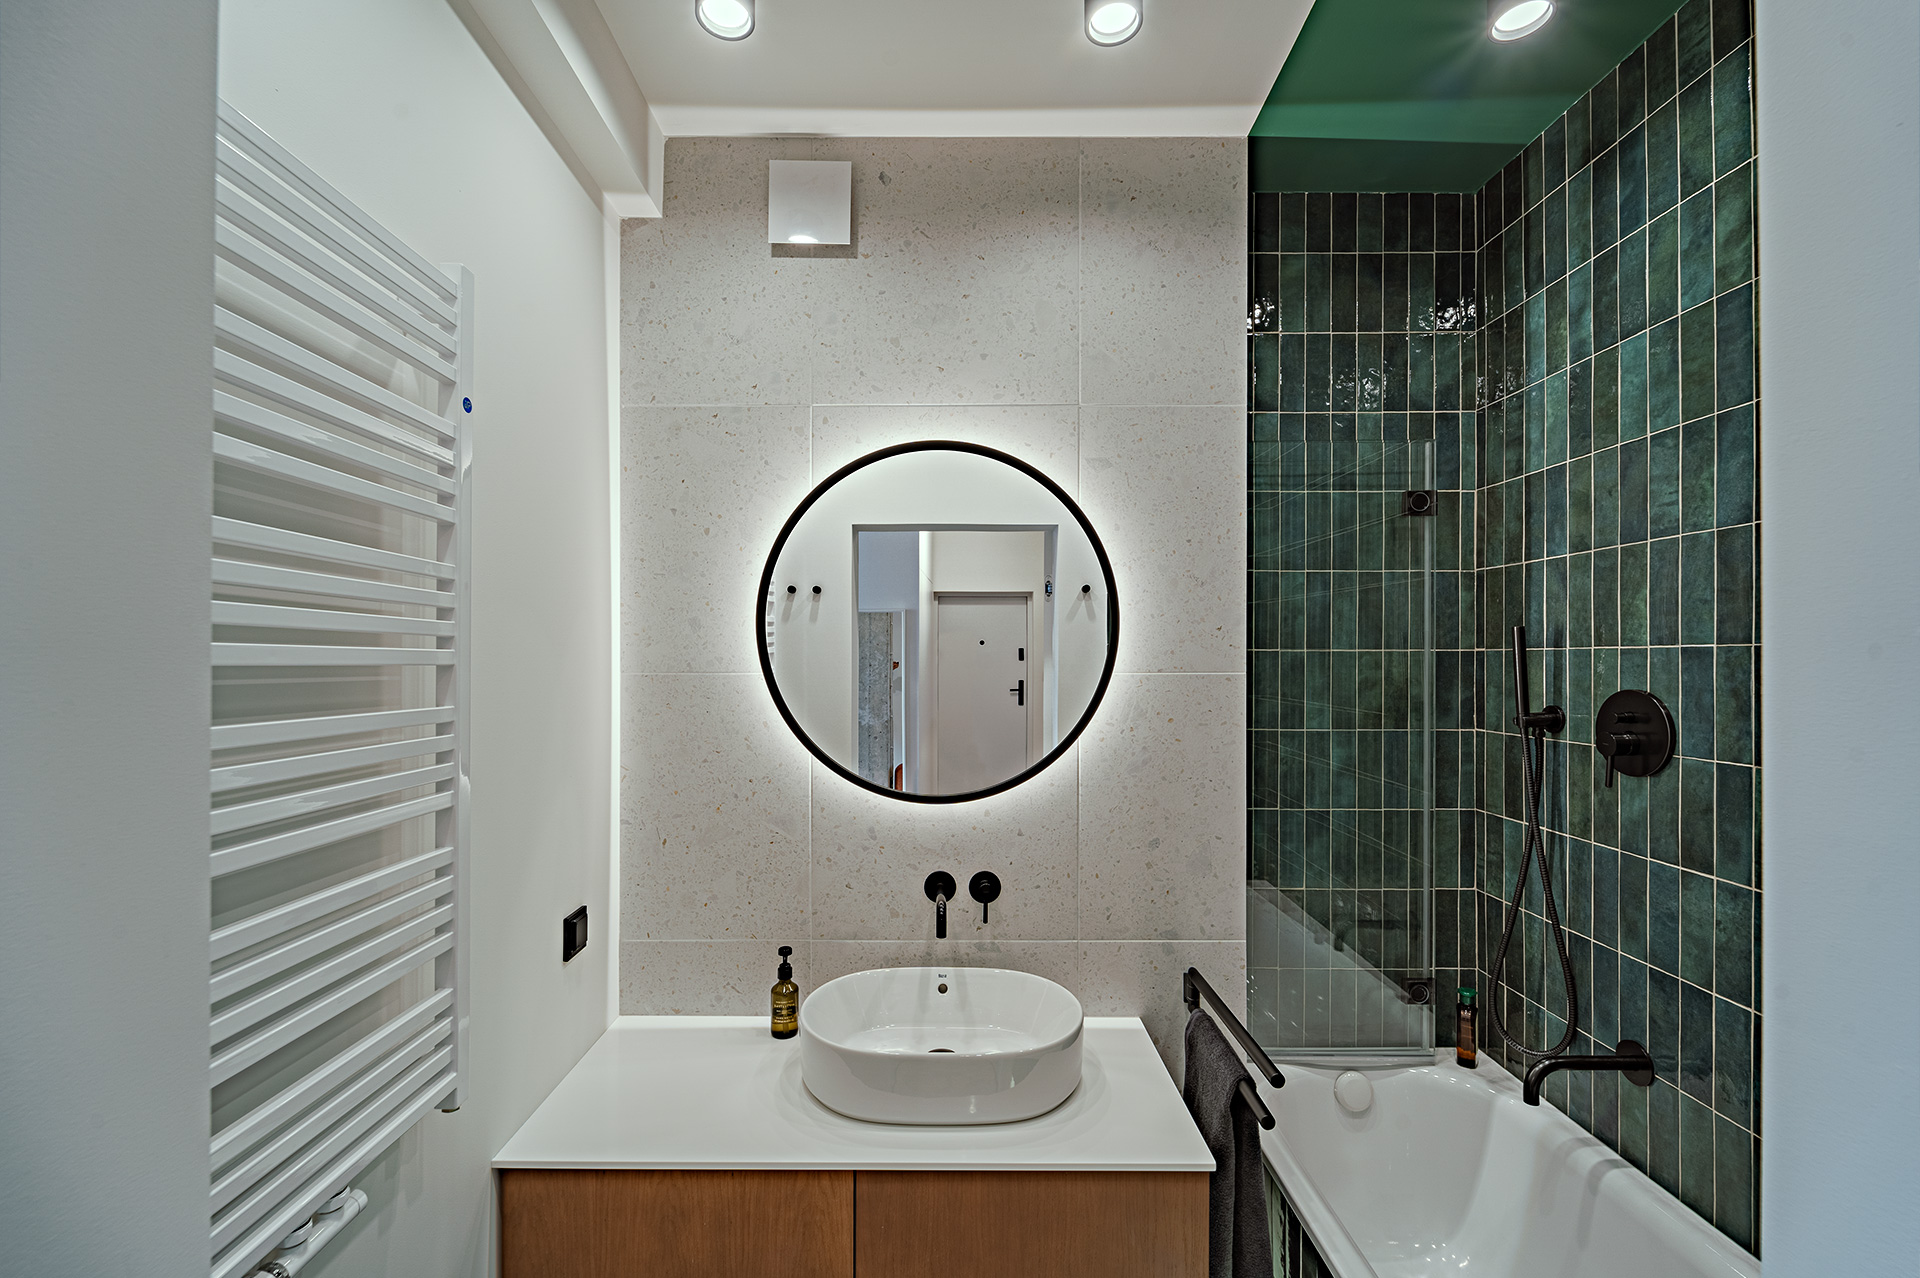 Łazienka podzielona jest kolorem na część suchą (biel) i kąpielową (zieleń). Zwróćcie uwagę, że dotyczy to także sufitu nad wanną!